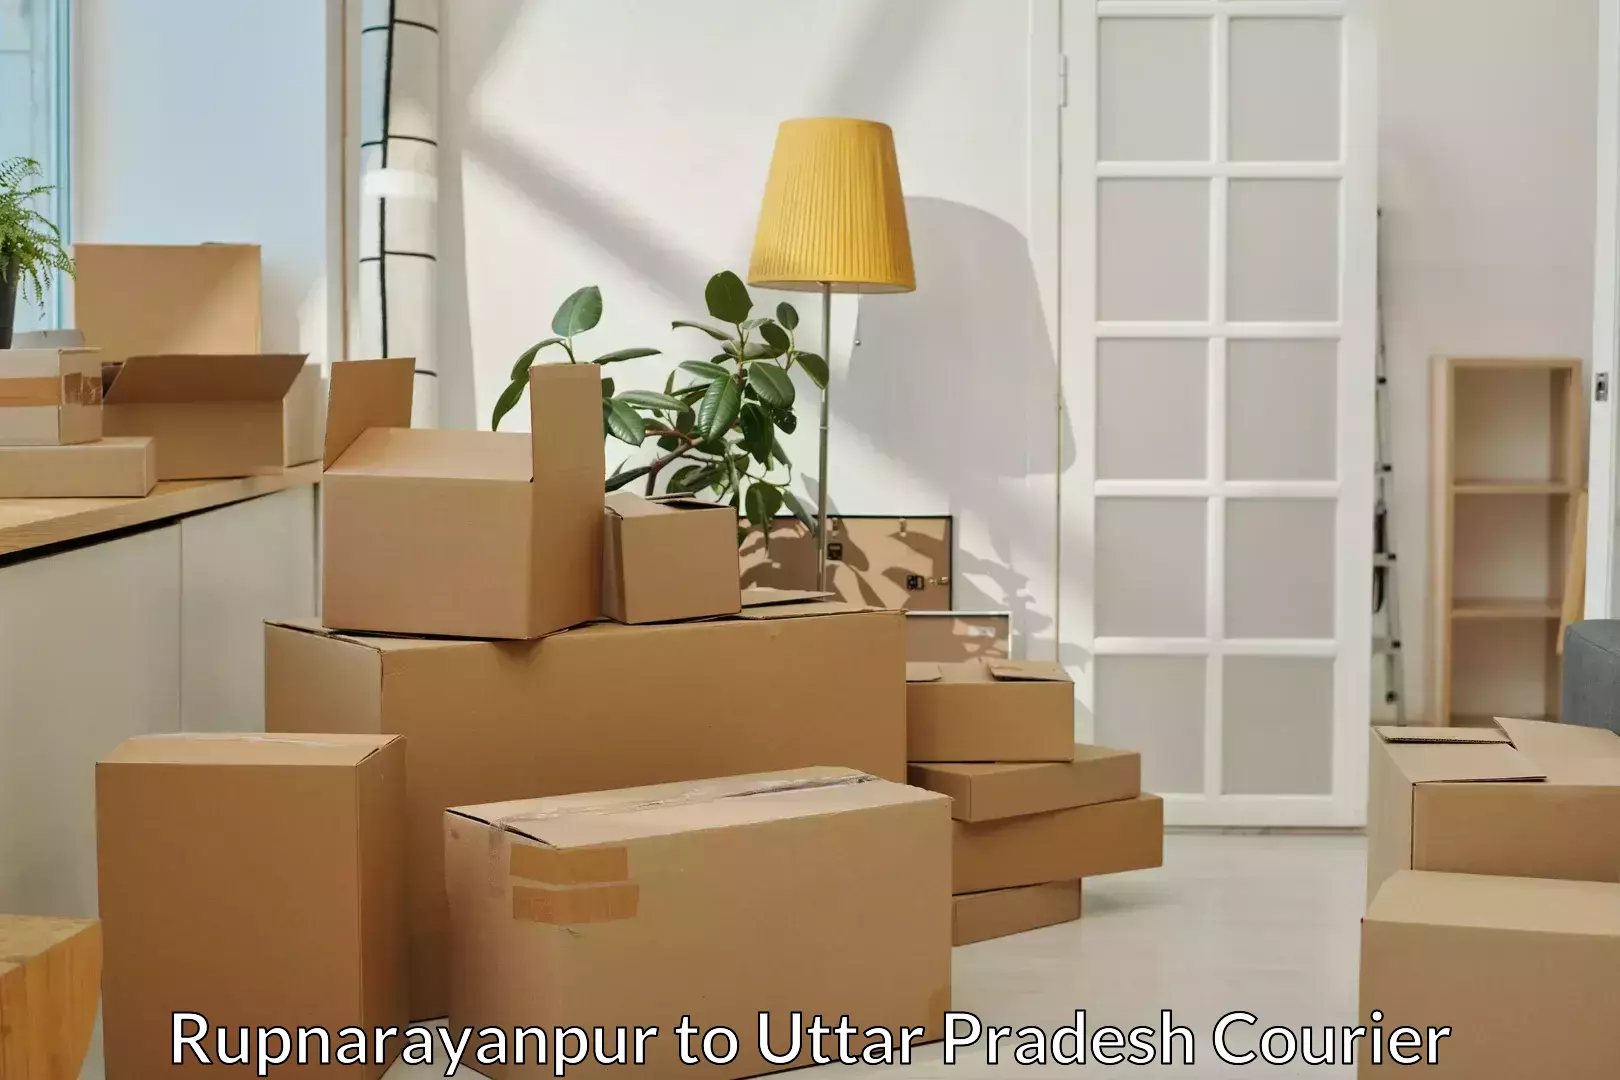 Furniture transport specialists Rupnarayanpur to Barhaj